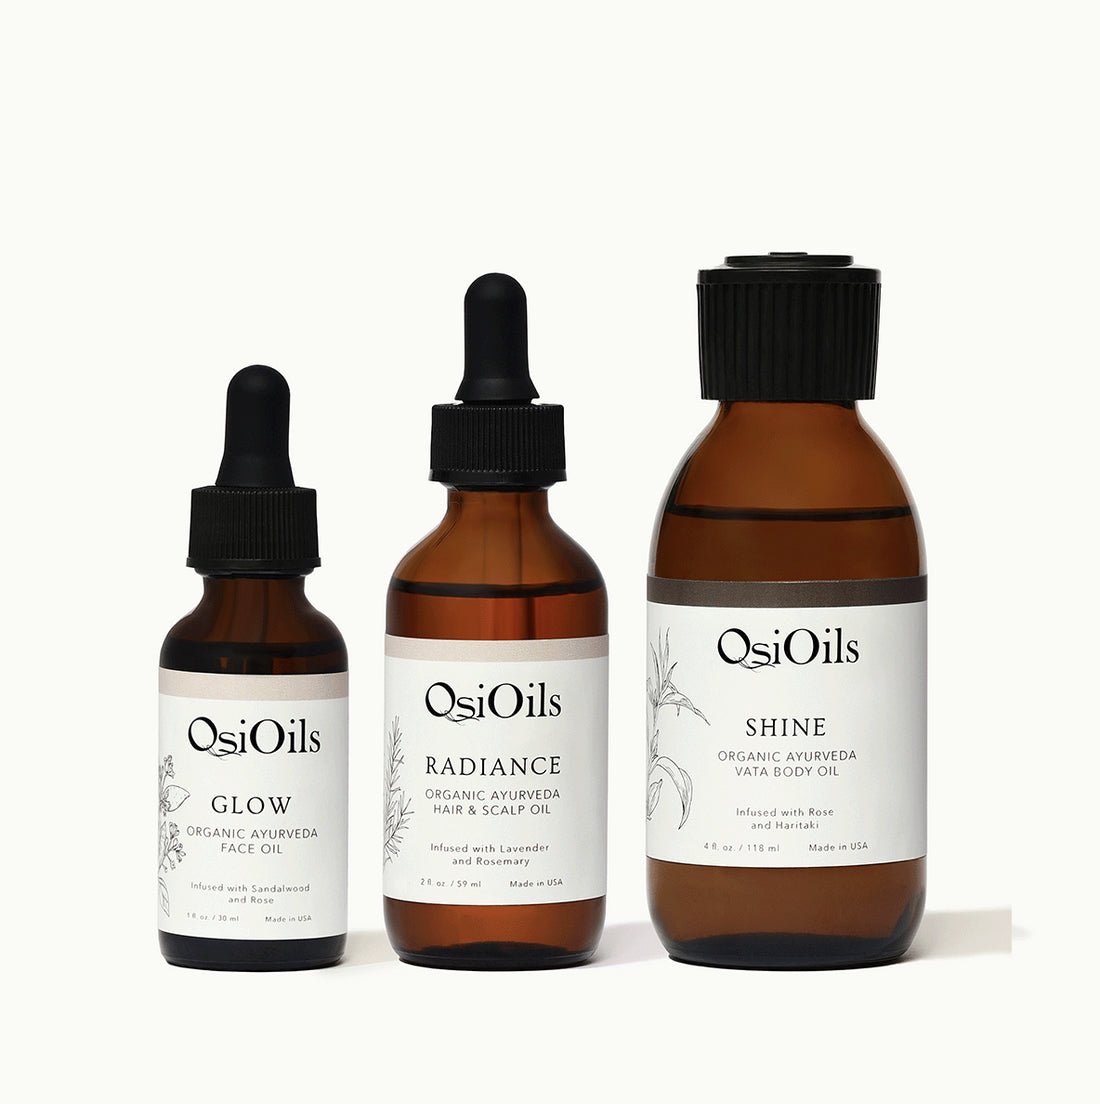 osi oils self care bundle